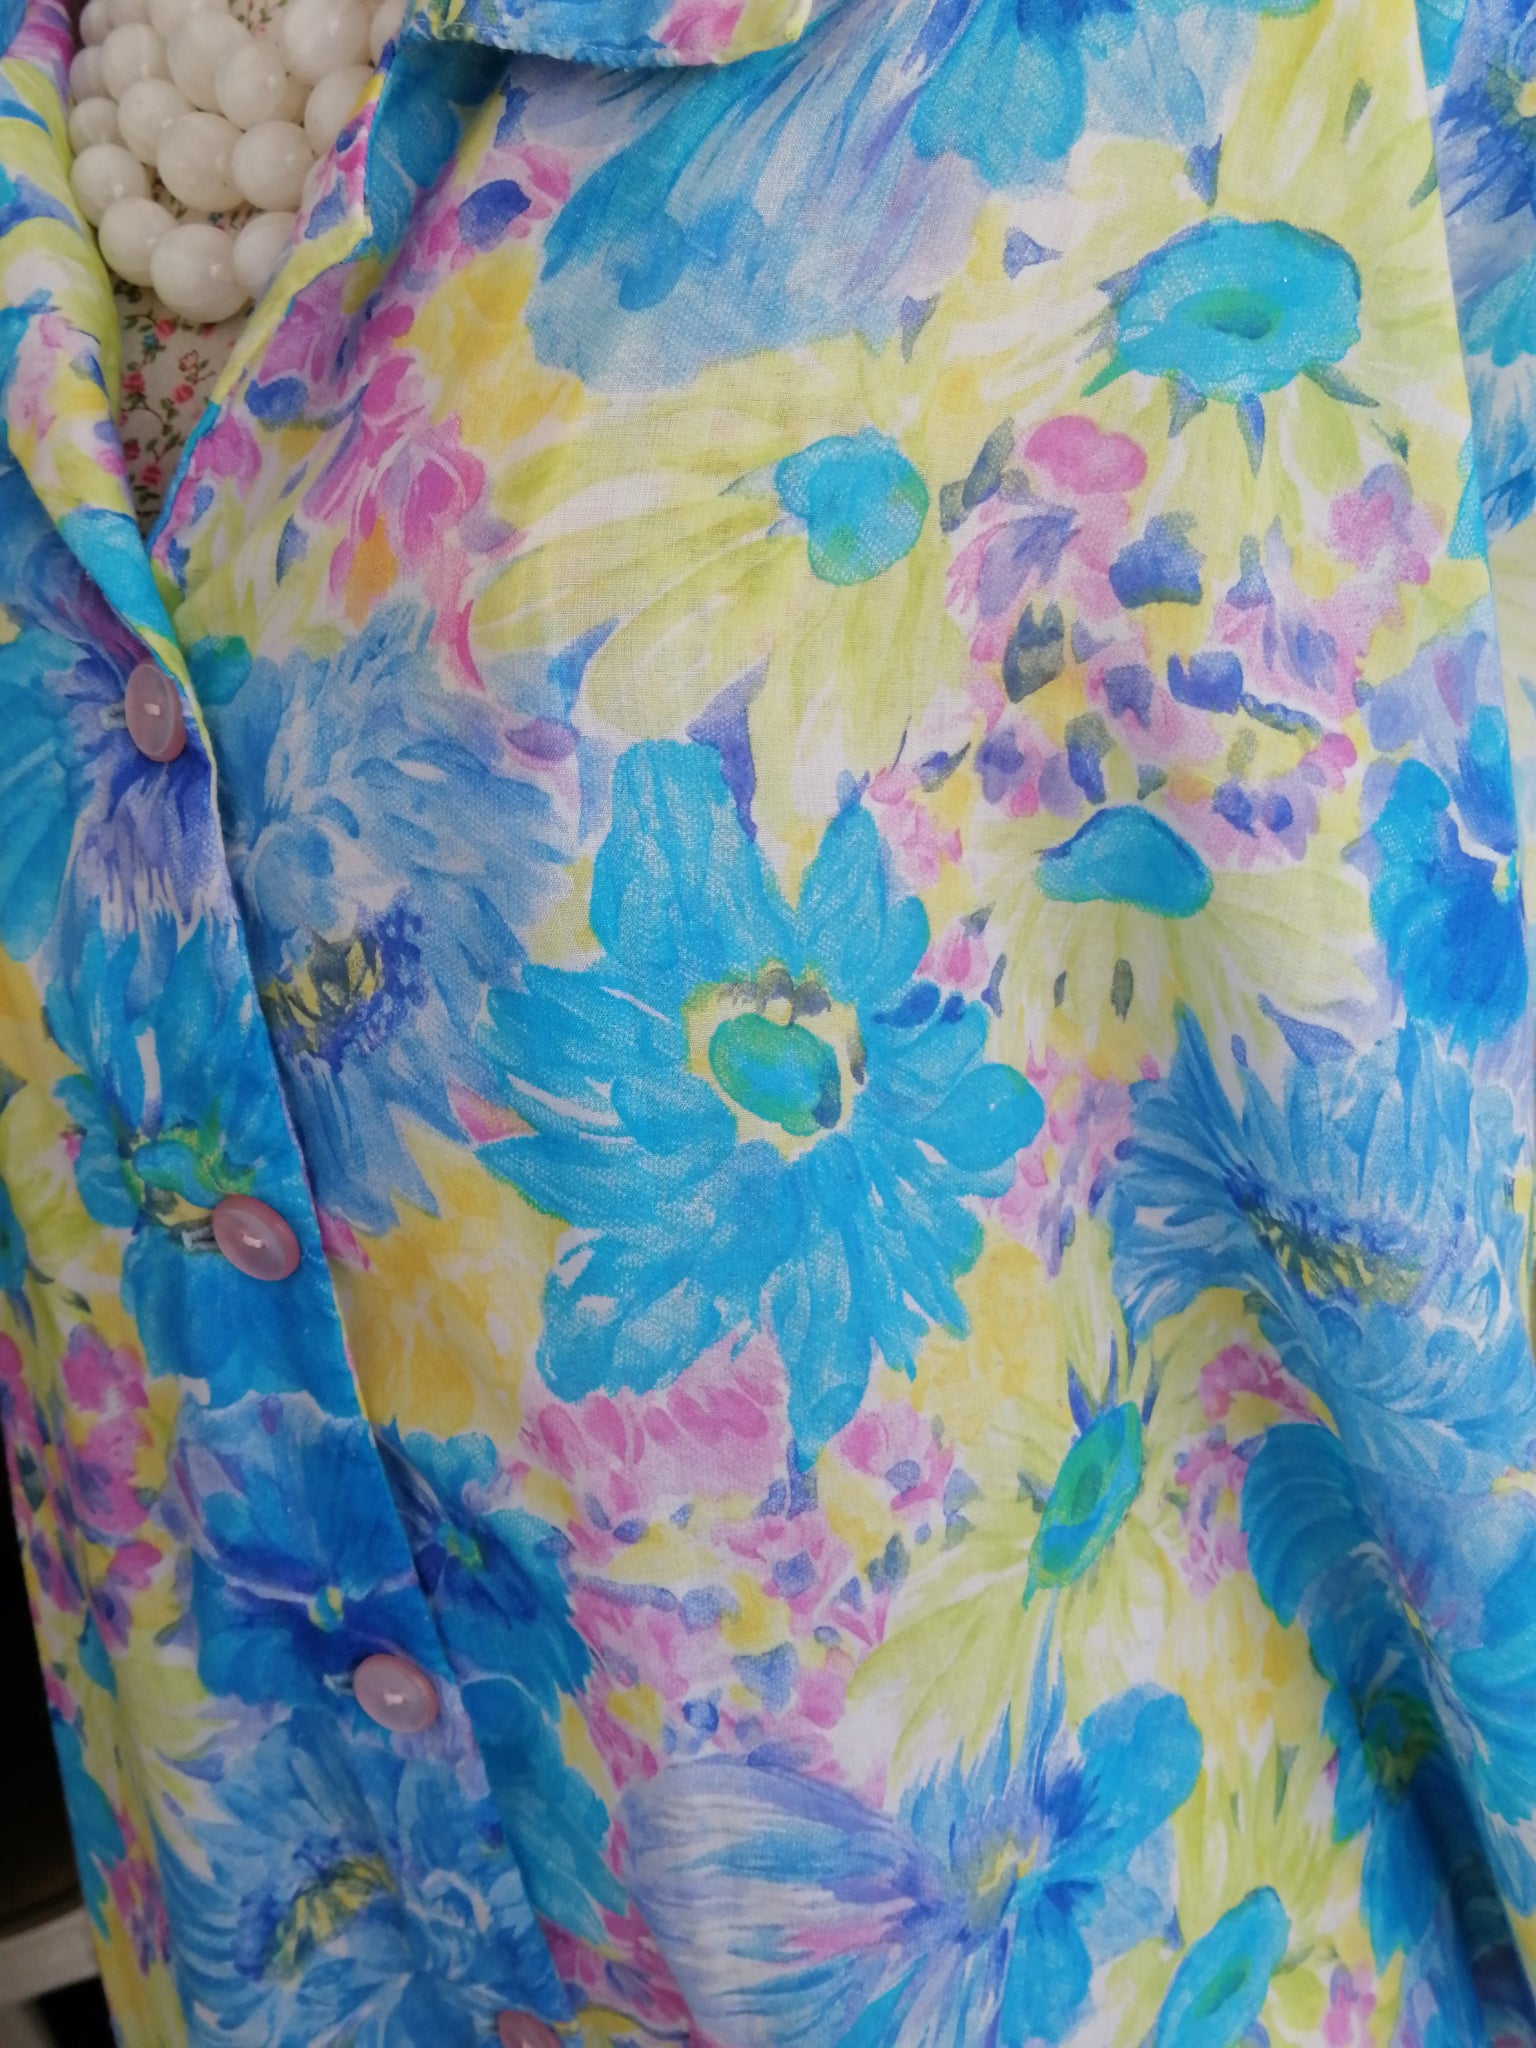 Vintage oversized floral shirt dress